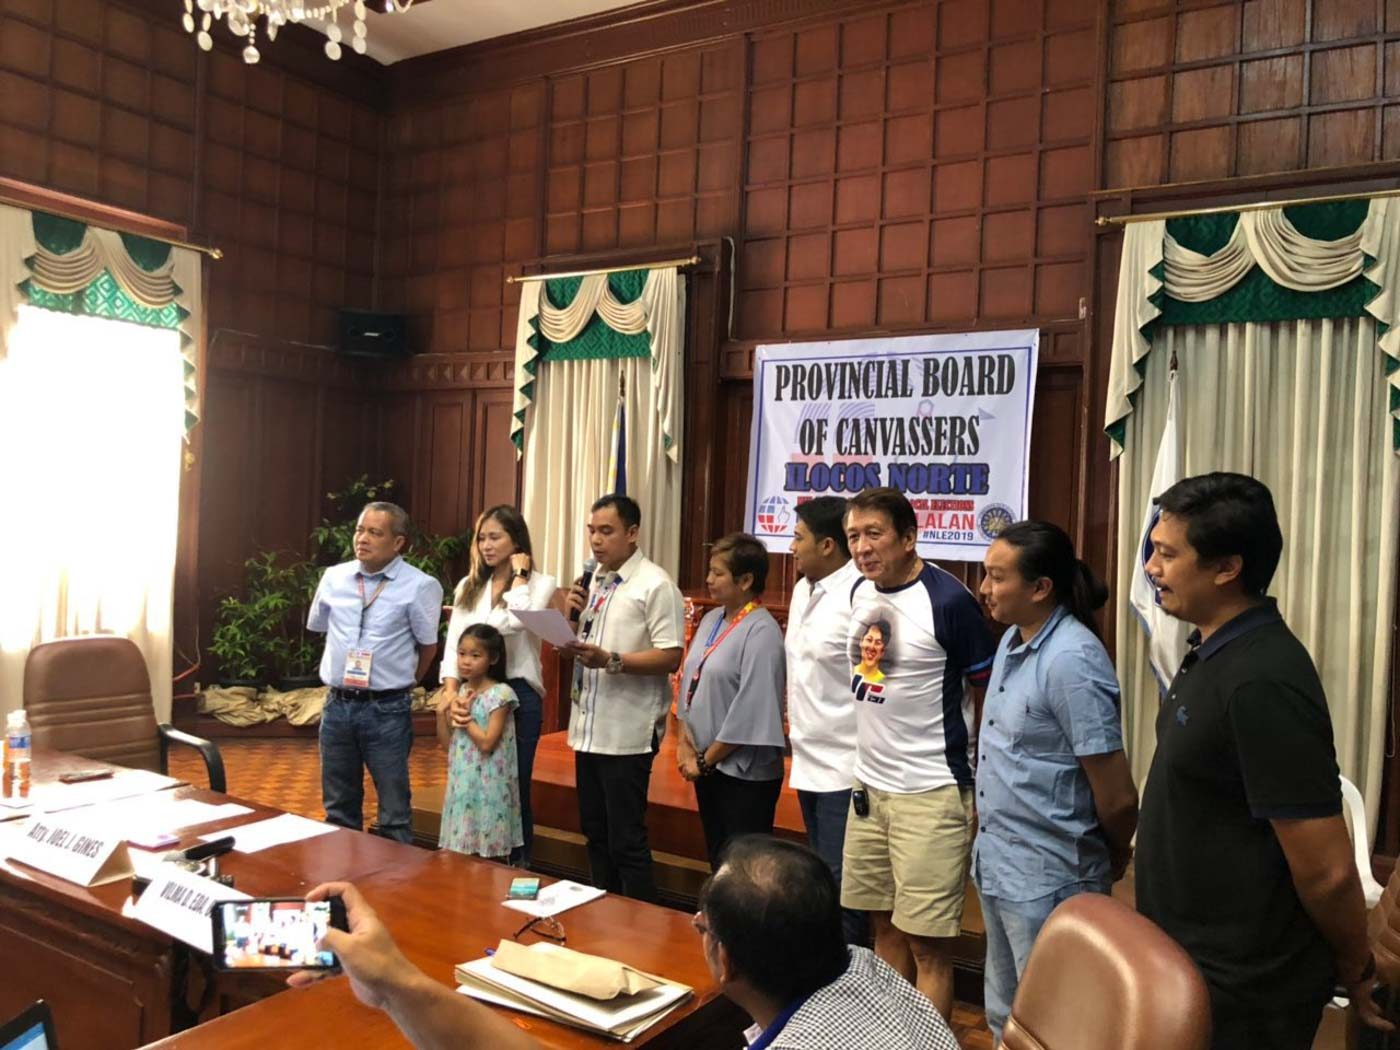 THE OTHER POLITICAL CLAN. Ria Fariñas is replacing her father, Rodolfo Fariñas, as representative of the 1st district of Ilocos Norte. Photos courtesy of Rudy Fariñas 